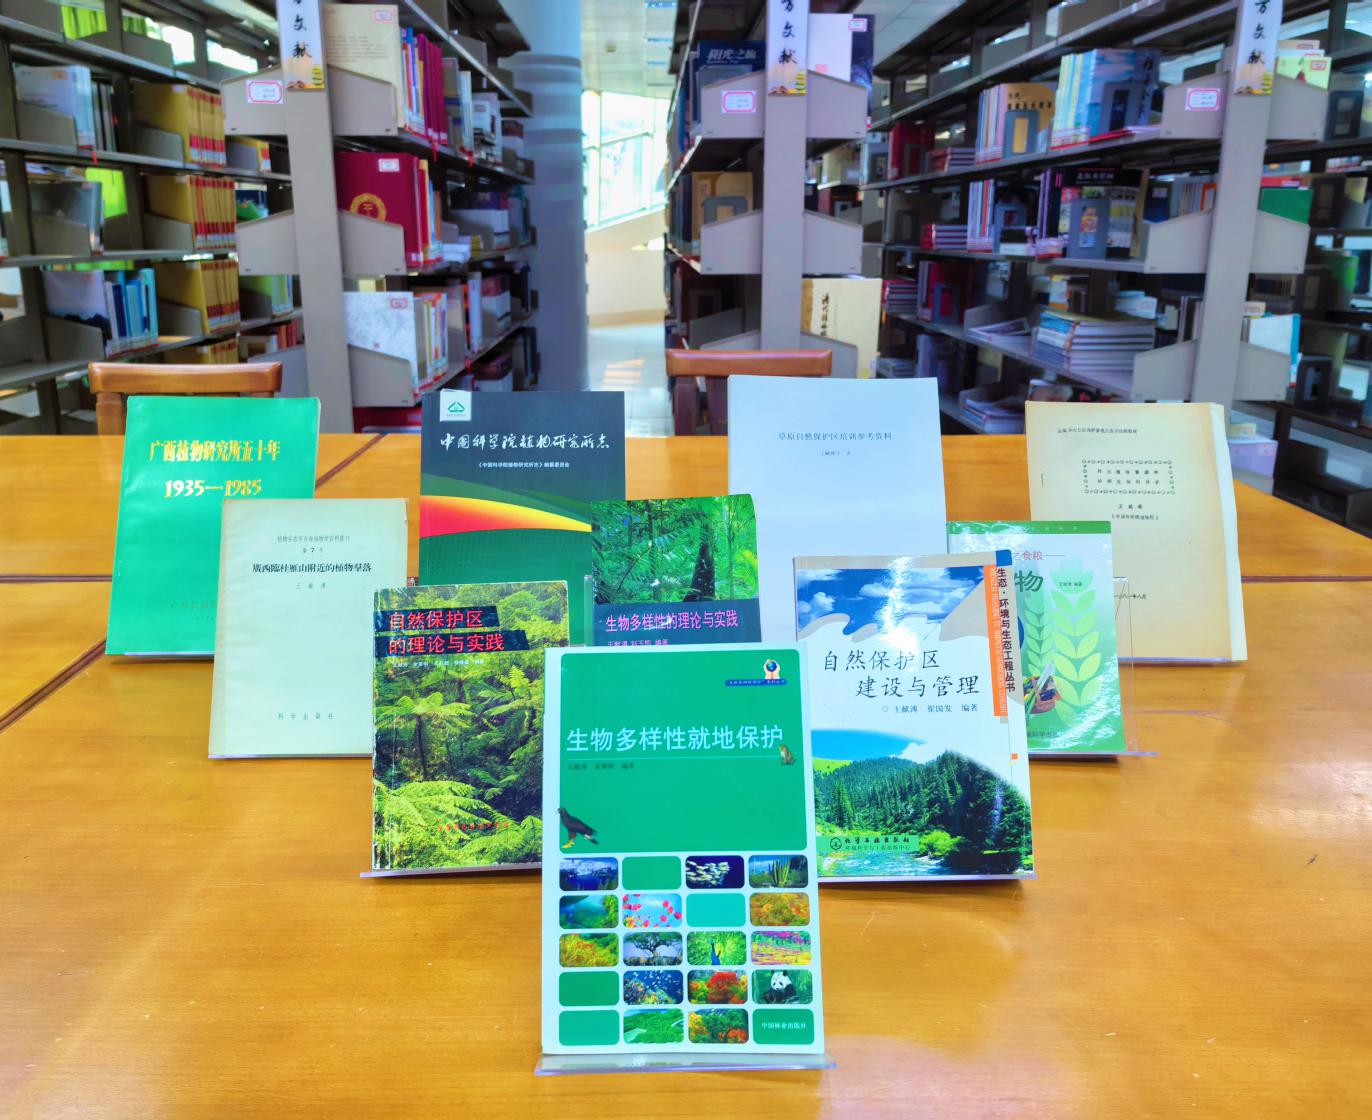 中国著名植物生态学家王献溥先生的珍贵著作及手稿入藏北海市图书馆